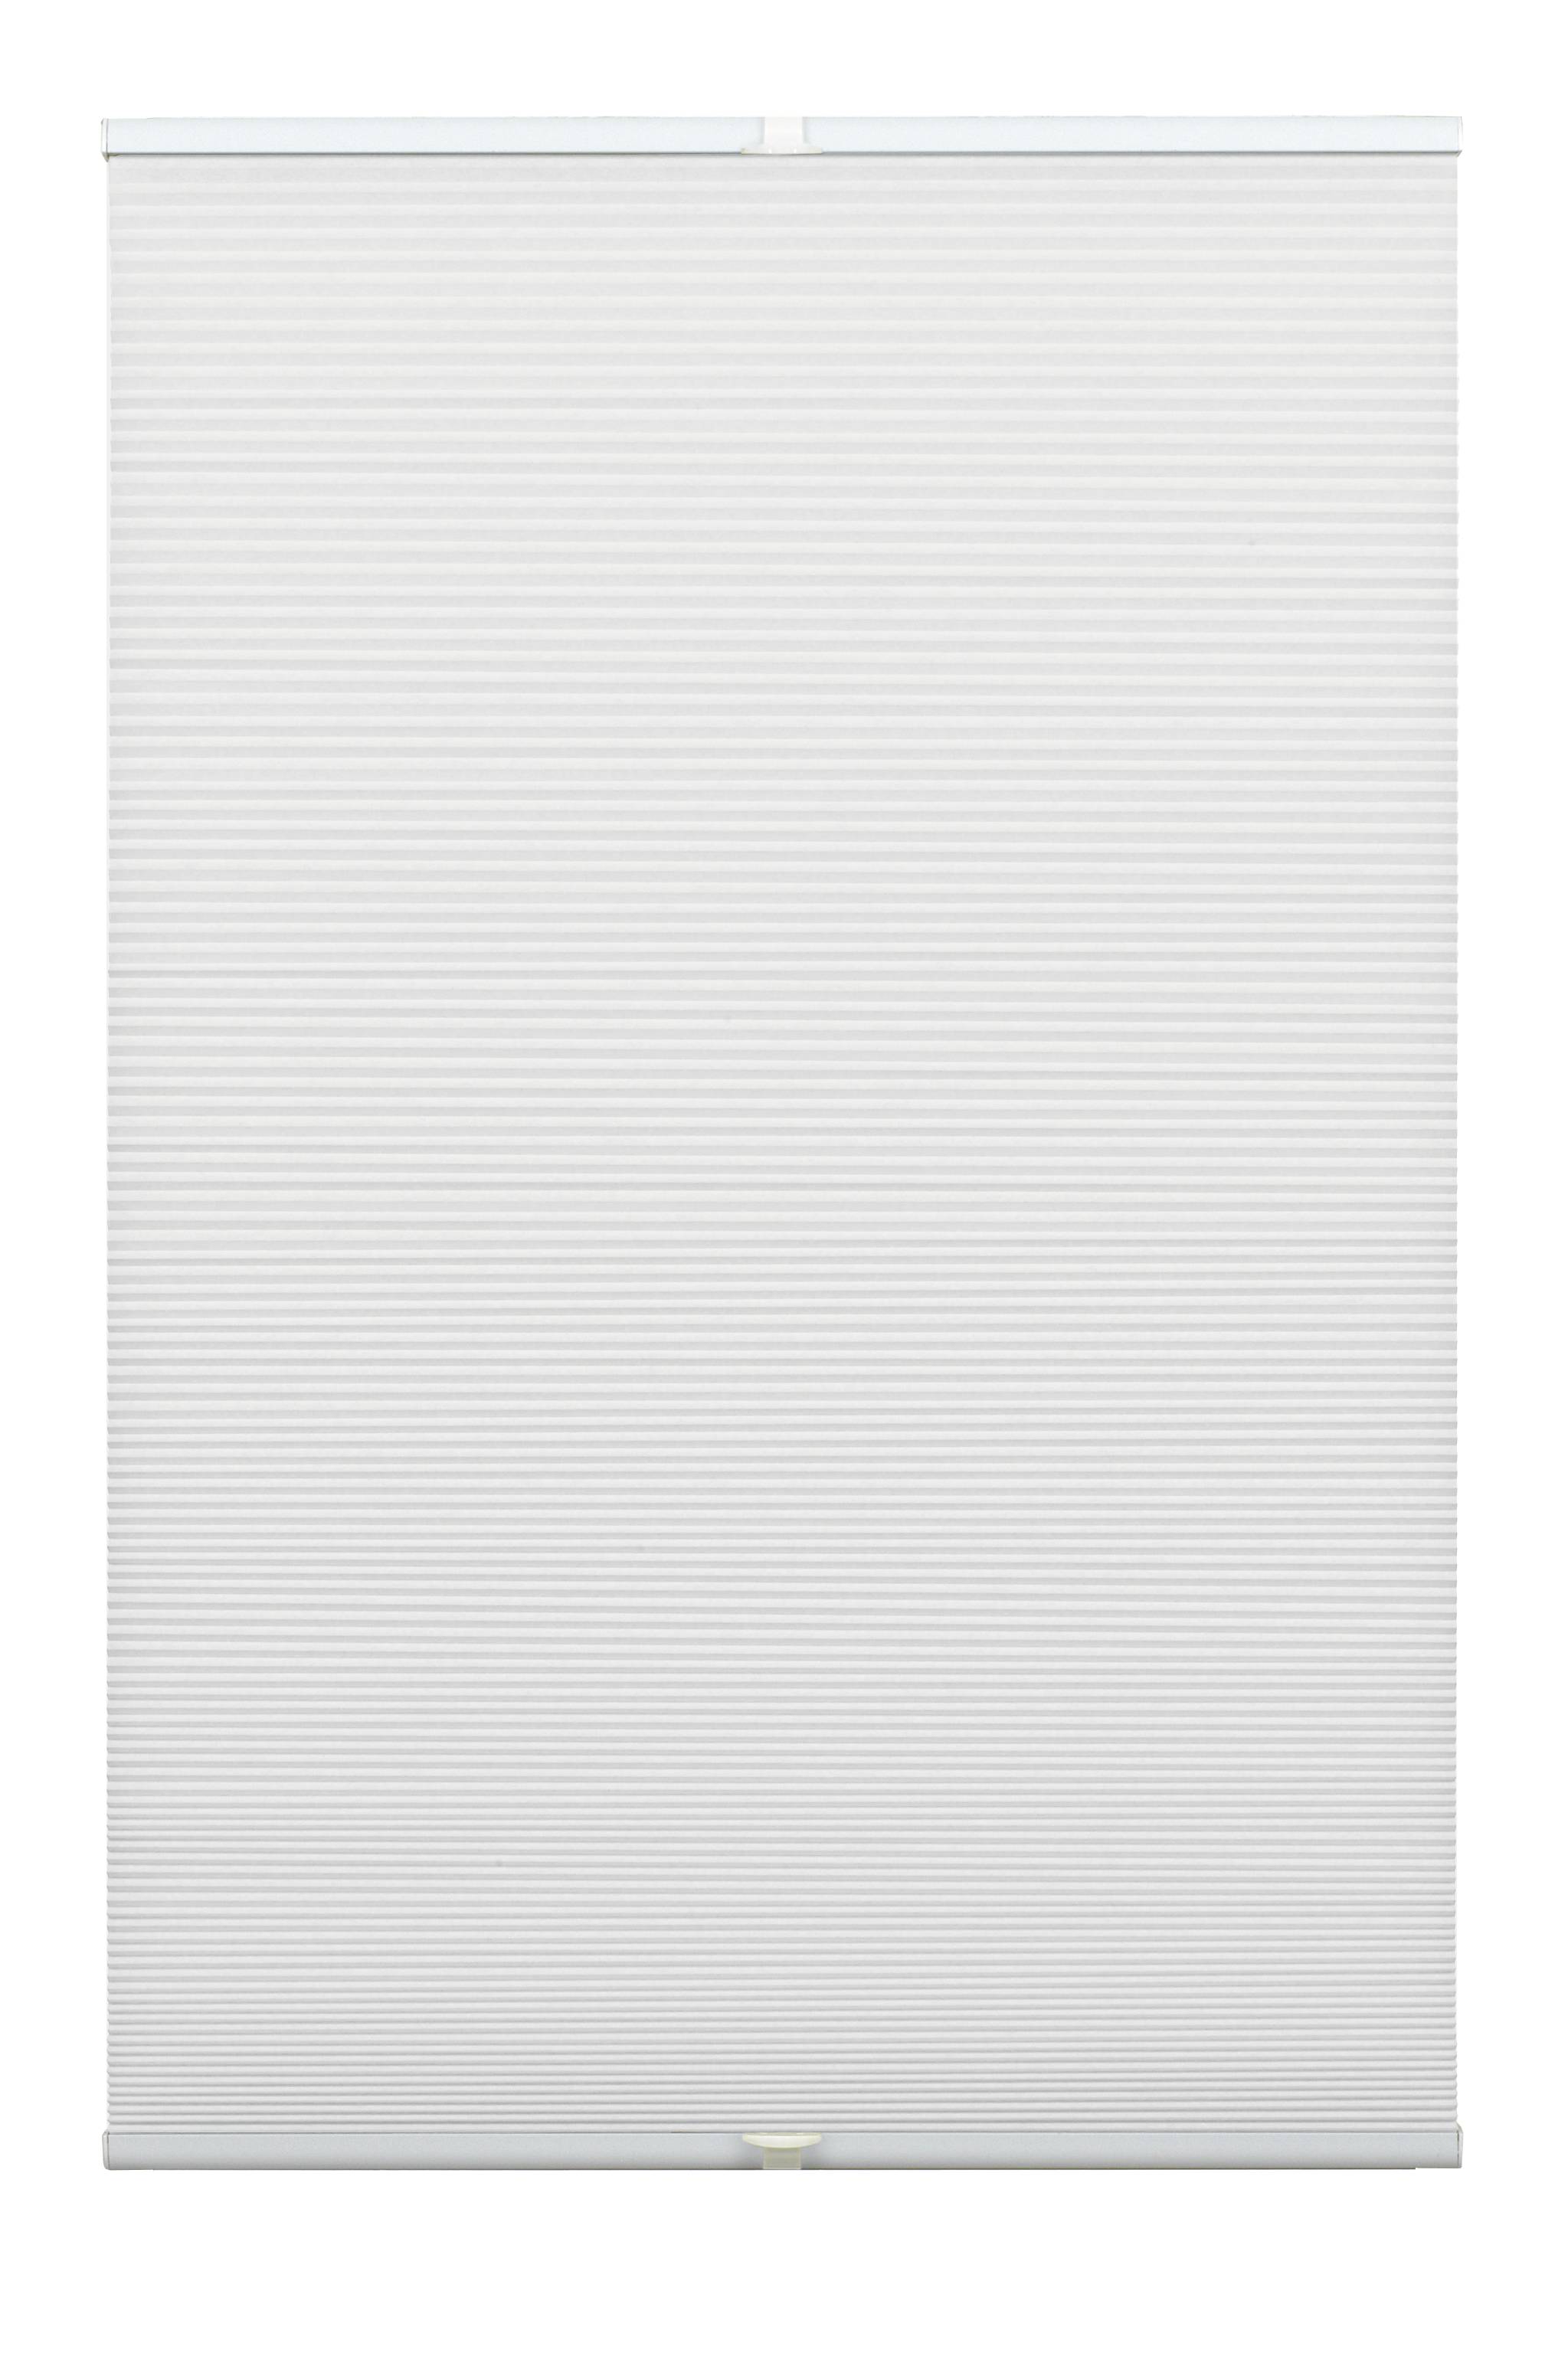 Plisé Concept Waben Termo se dvěma ovládacími profily, 70x130cm, bílá (100% polyestervlies, neprůsvitná, 25mm dutinkové plisování. Zvuková a v zimě i v létě tepelná izolace. Individuálně nastavitená výška díky dvěma ovládacím hliníkovým profilům, včetně 2